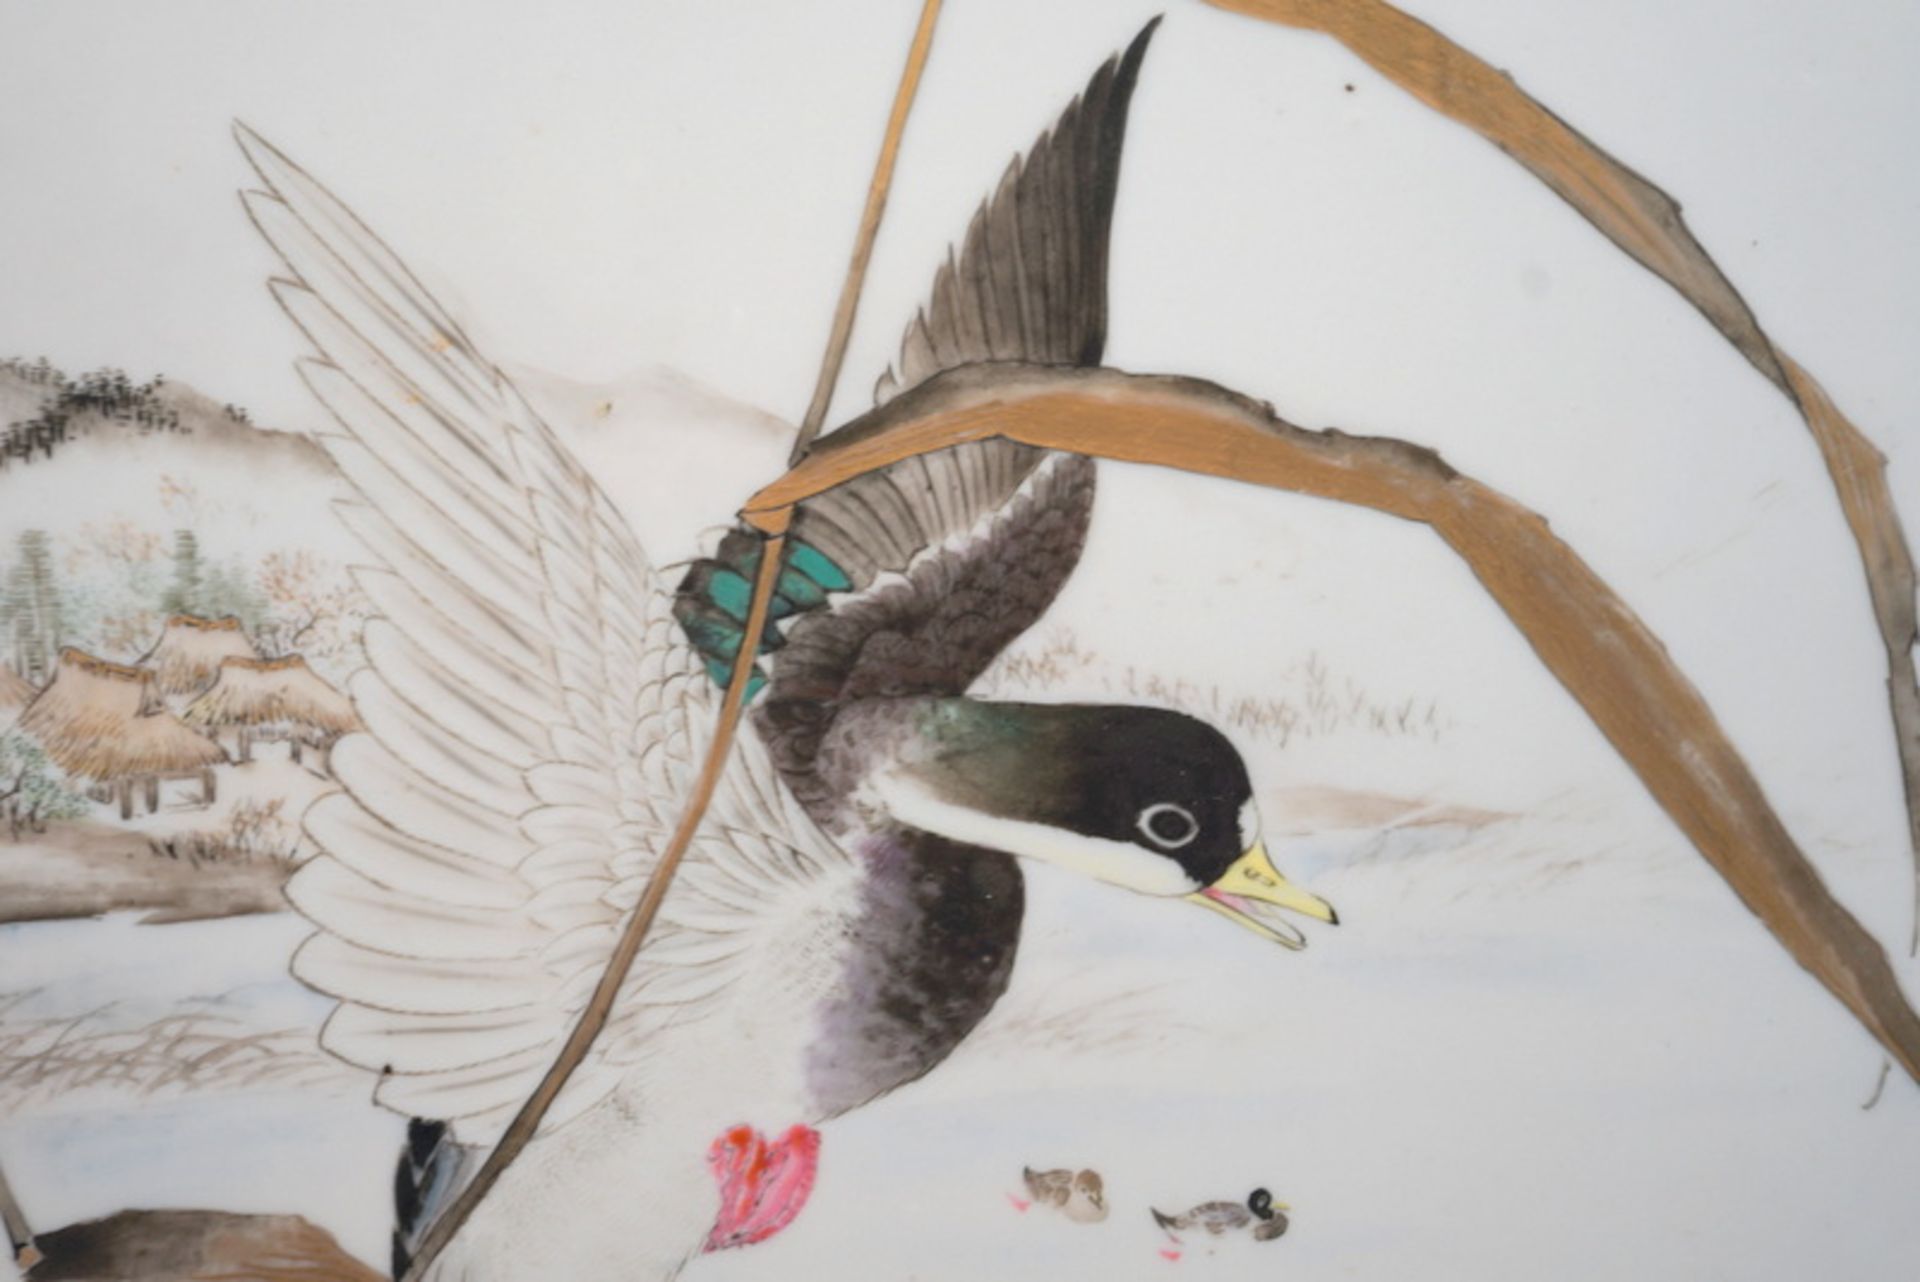 Grosse Porzellankachel mit Auffliegender Ente und Seepanorama - Bild 3 aus 5